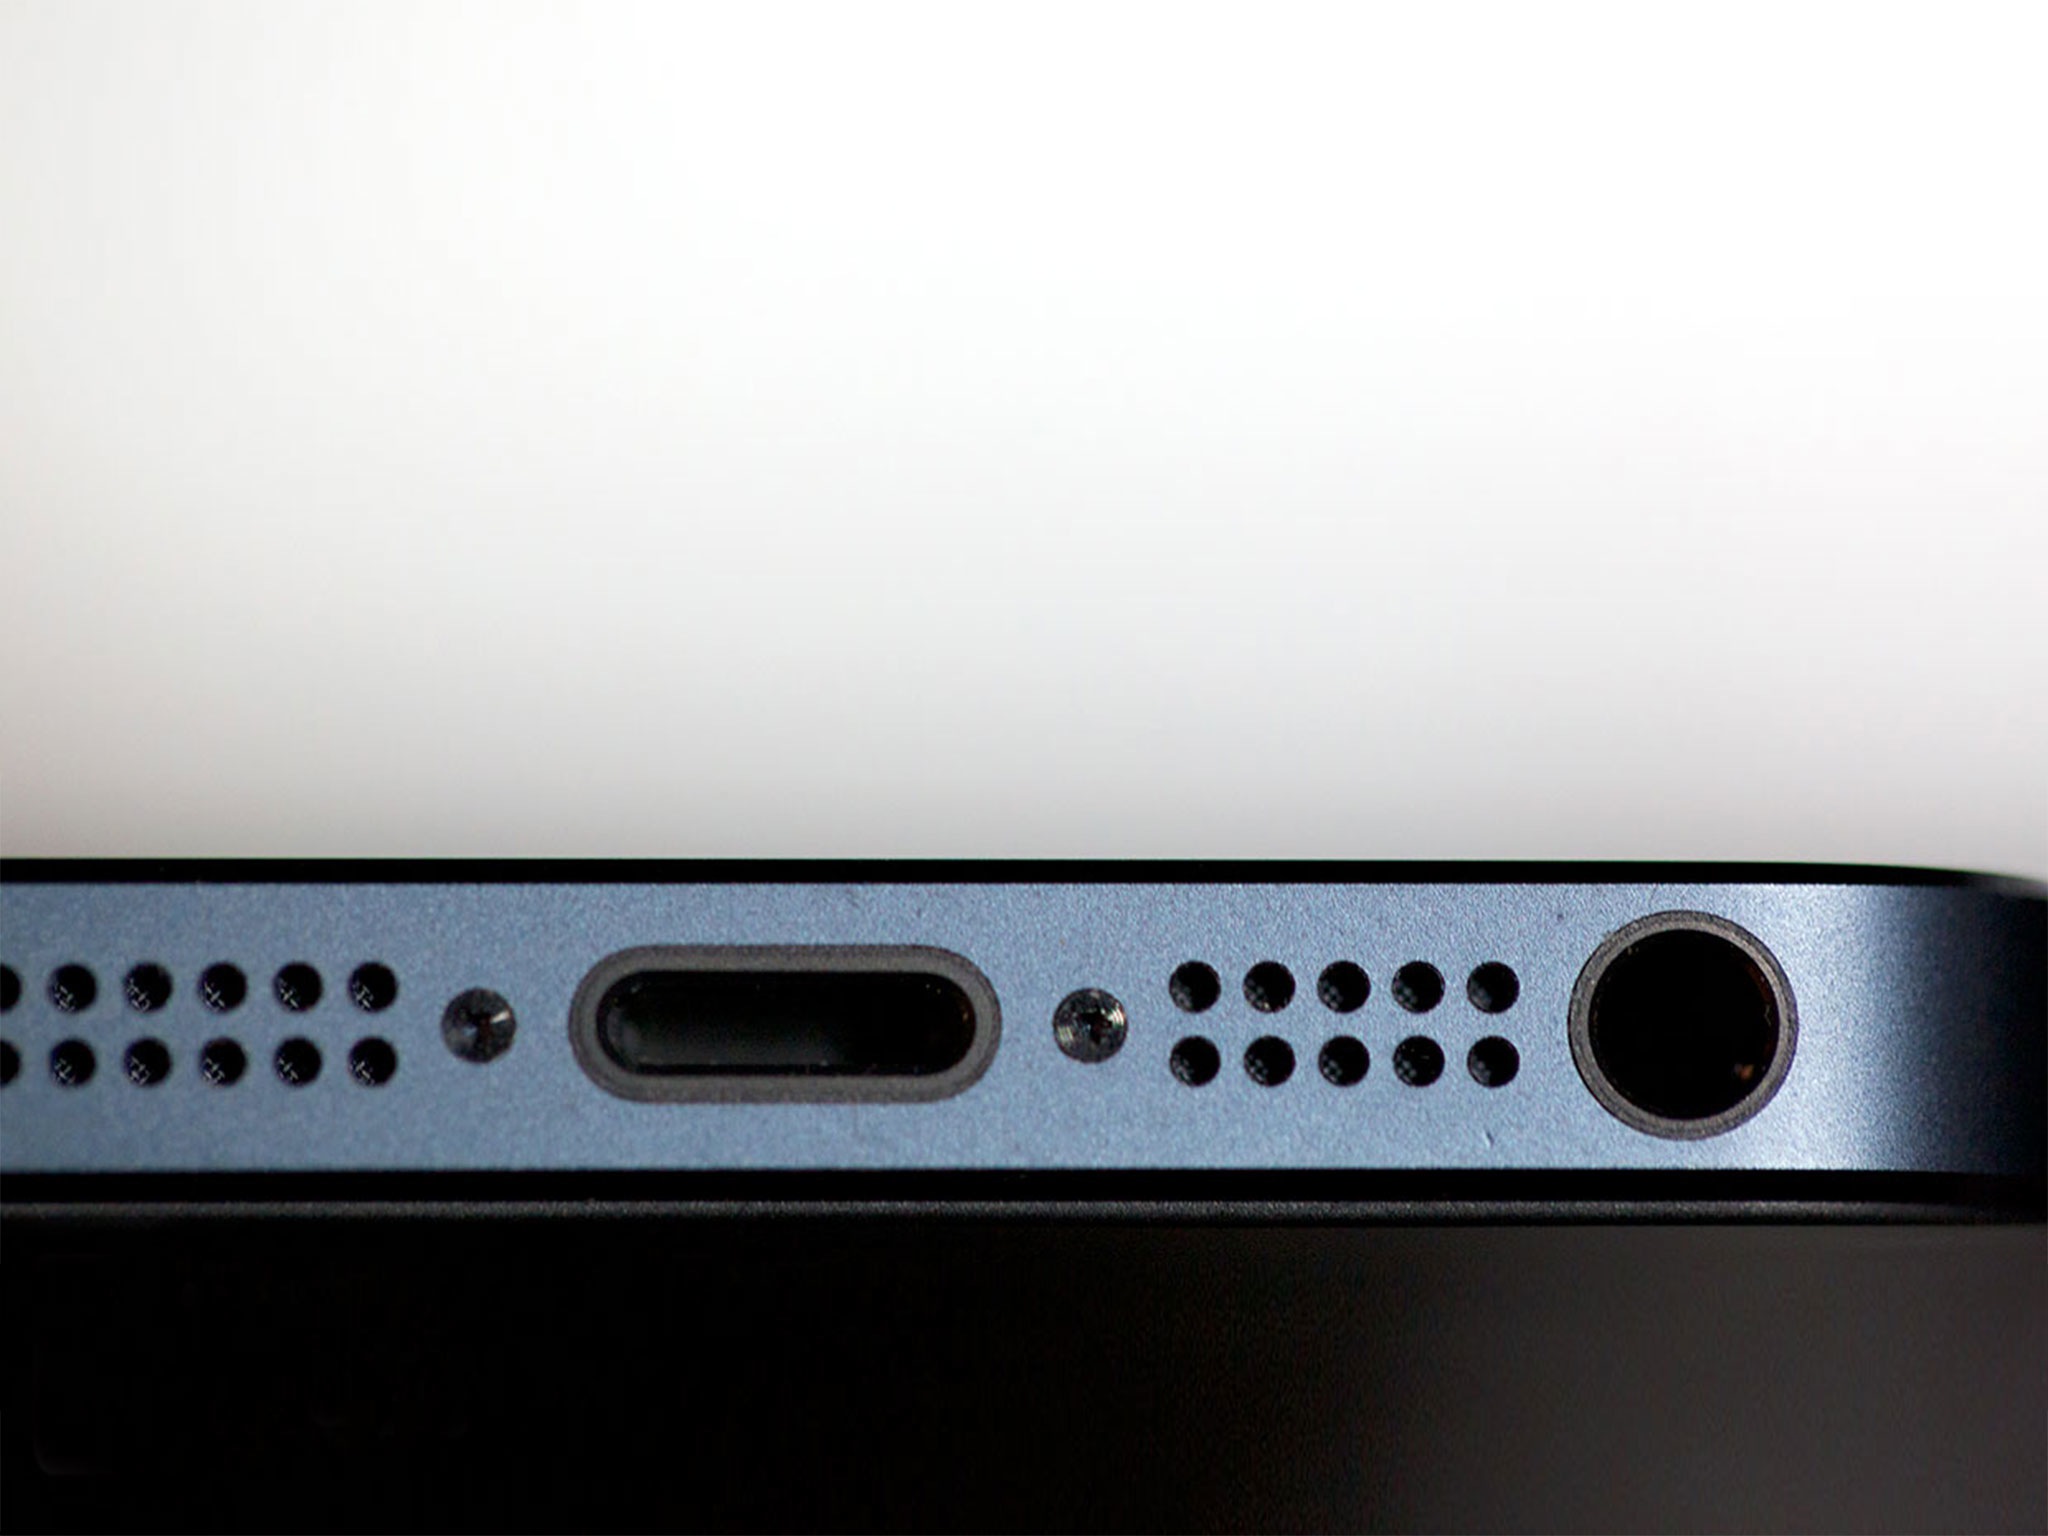 Comment remplacer un haut-parleur grillé dans un iPhone 5